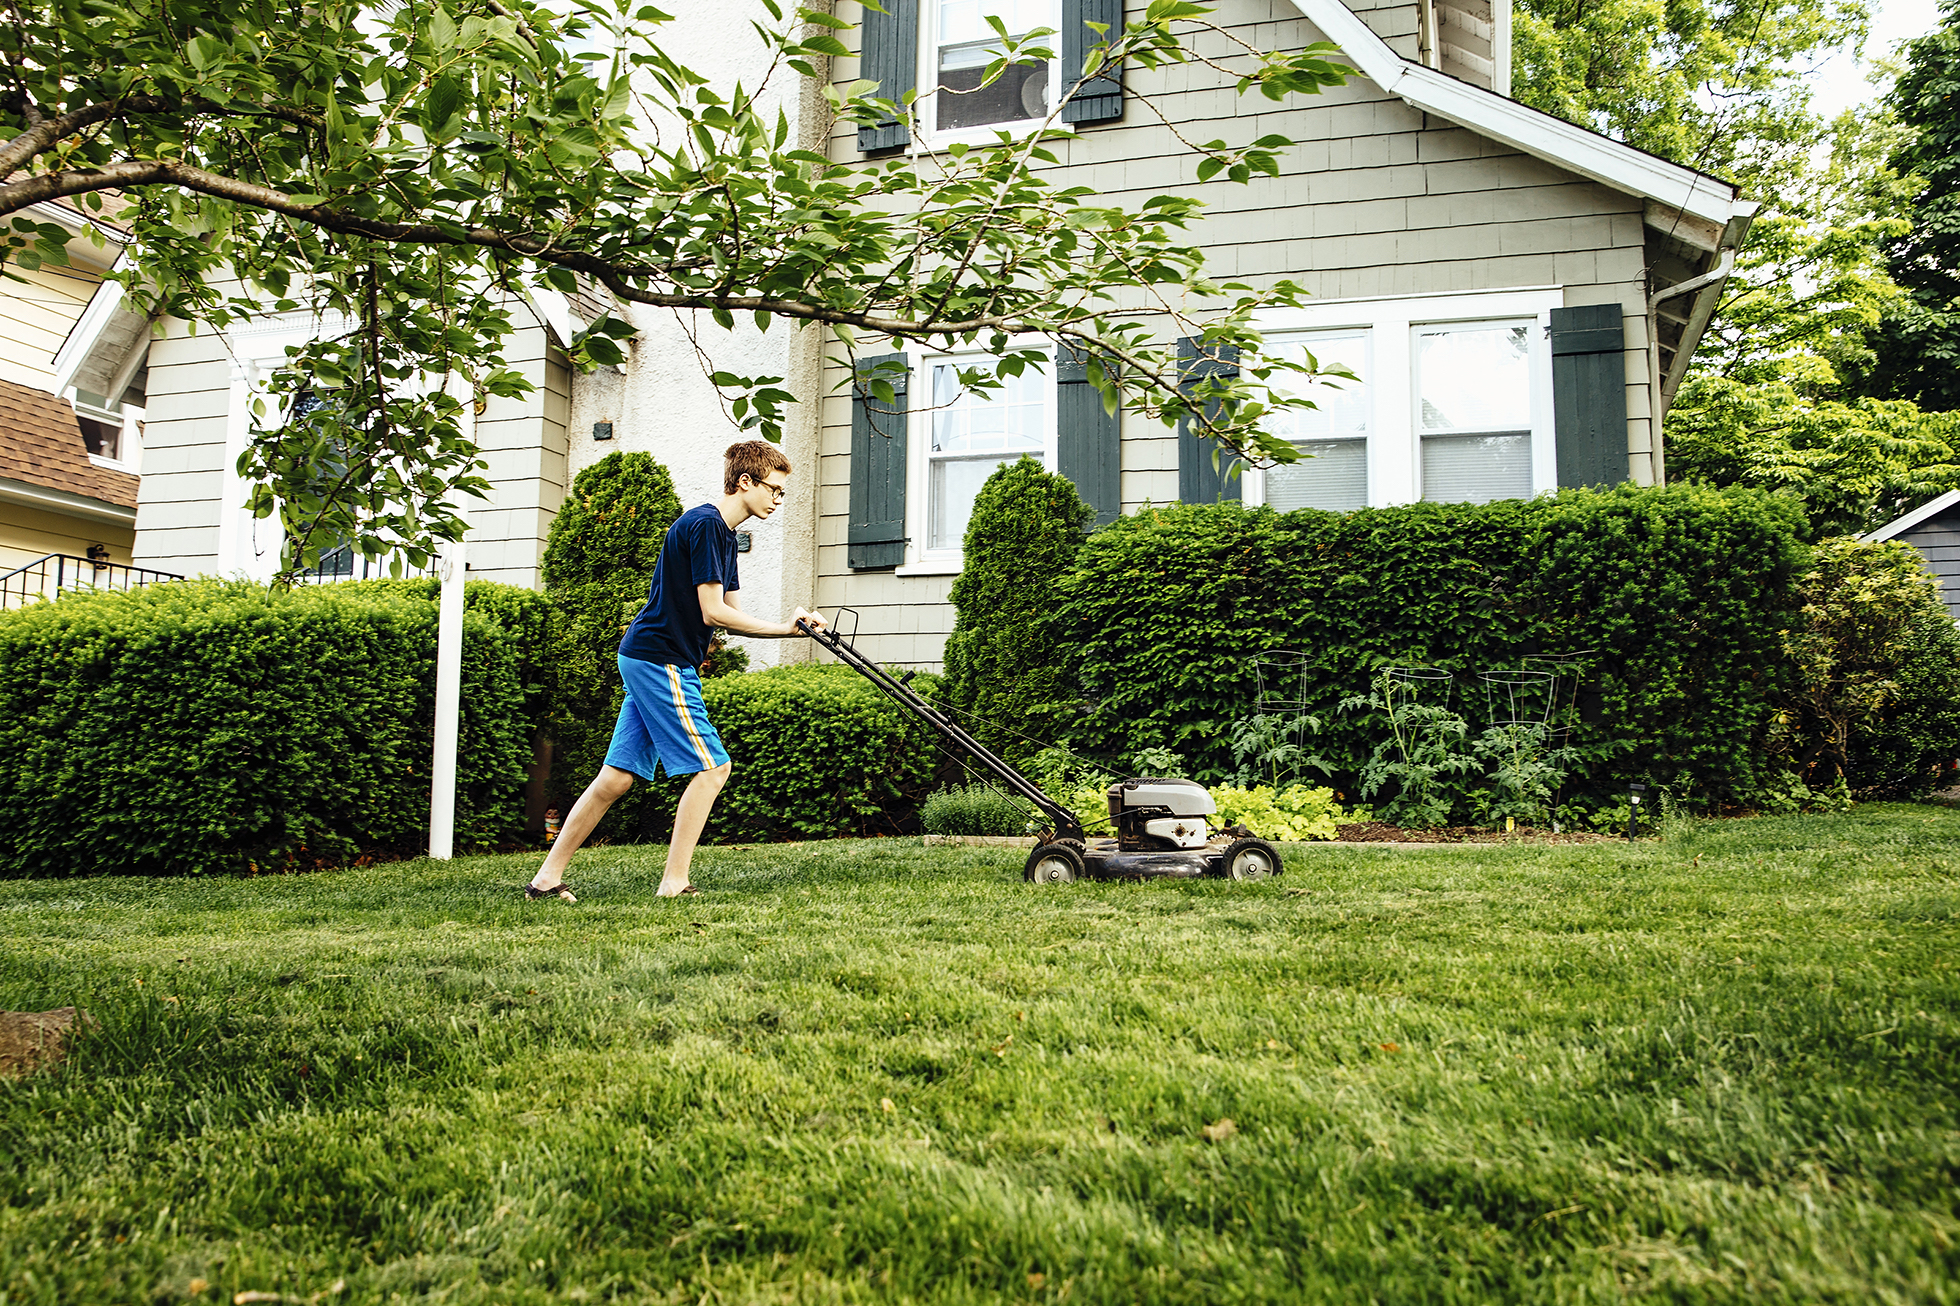 Tween boy in blue mowing lawn outside light green house